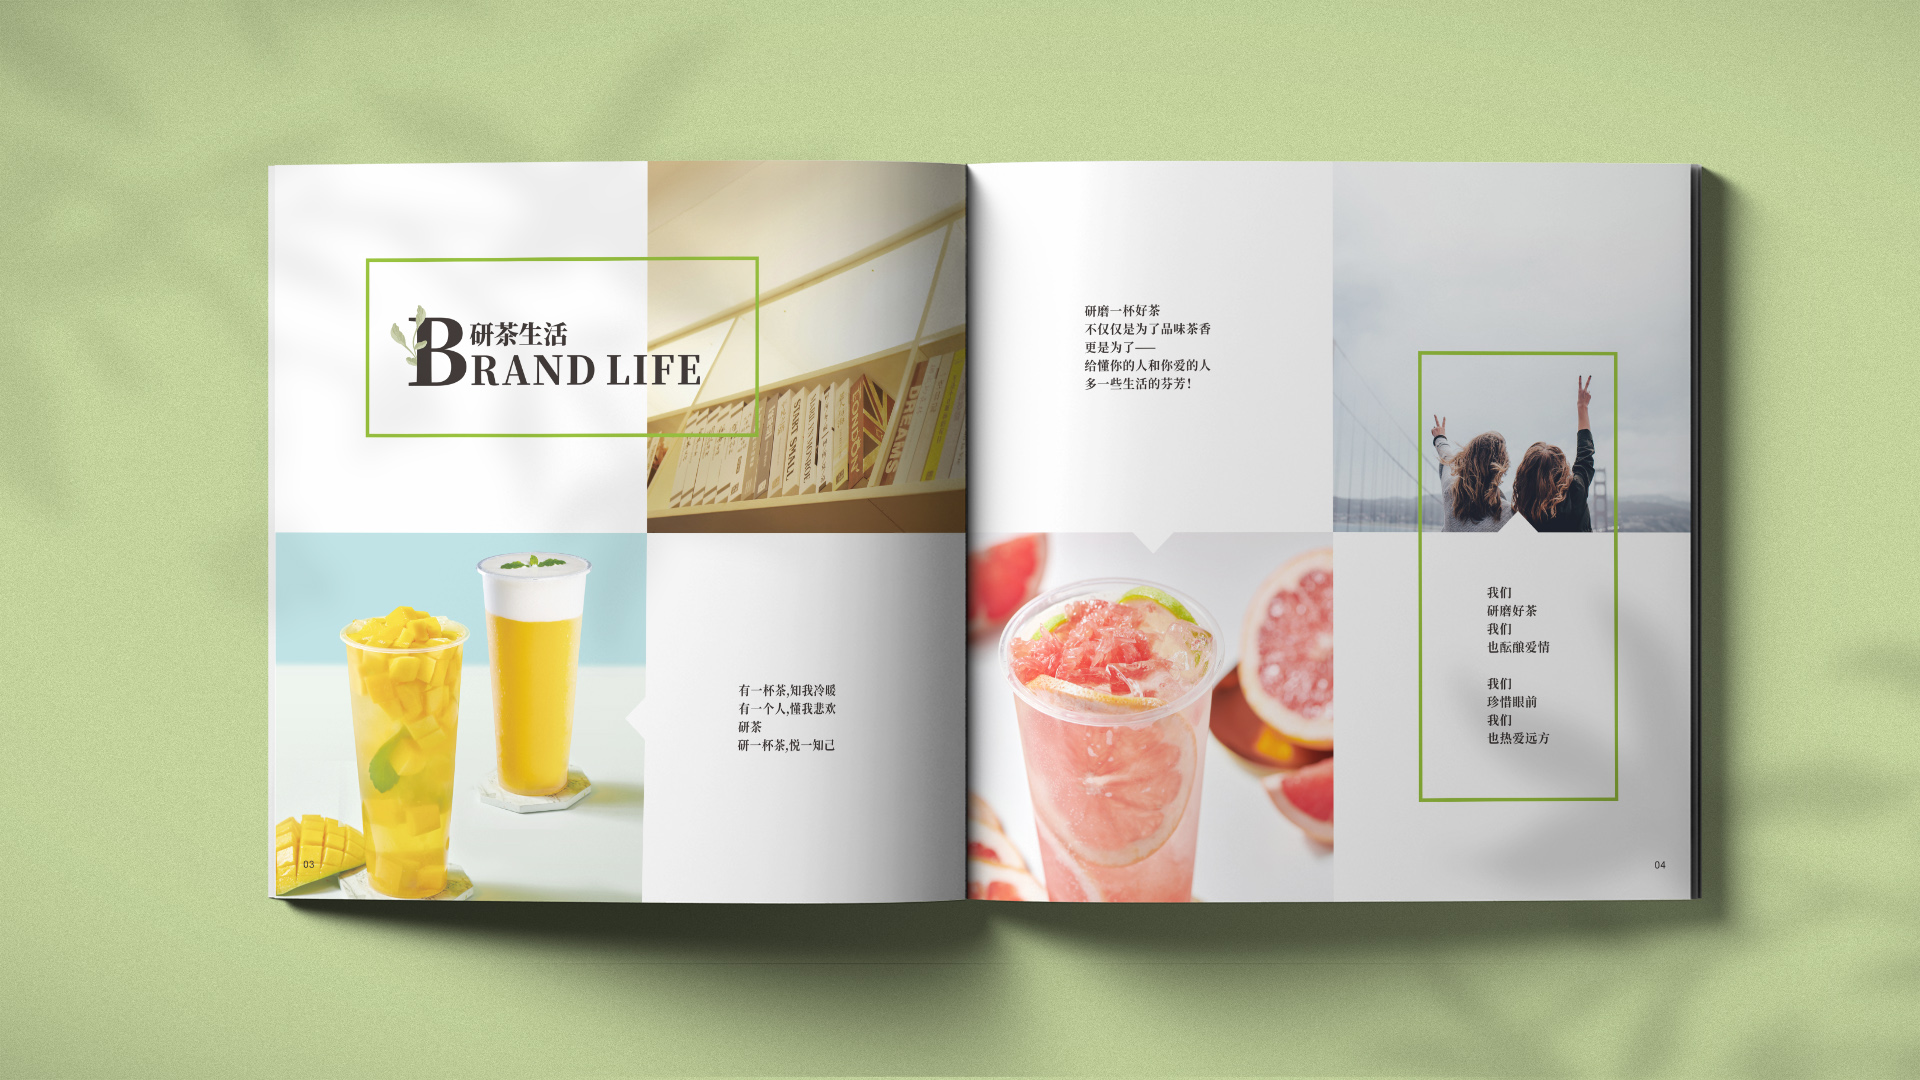 武汉奶茶品牌专业策划设计